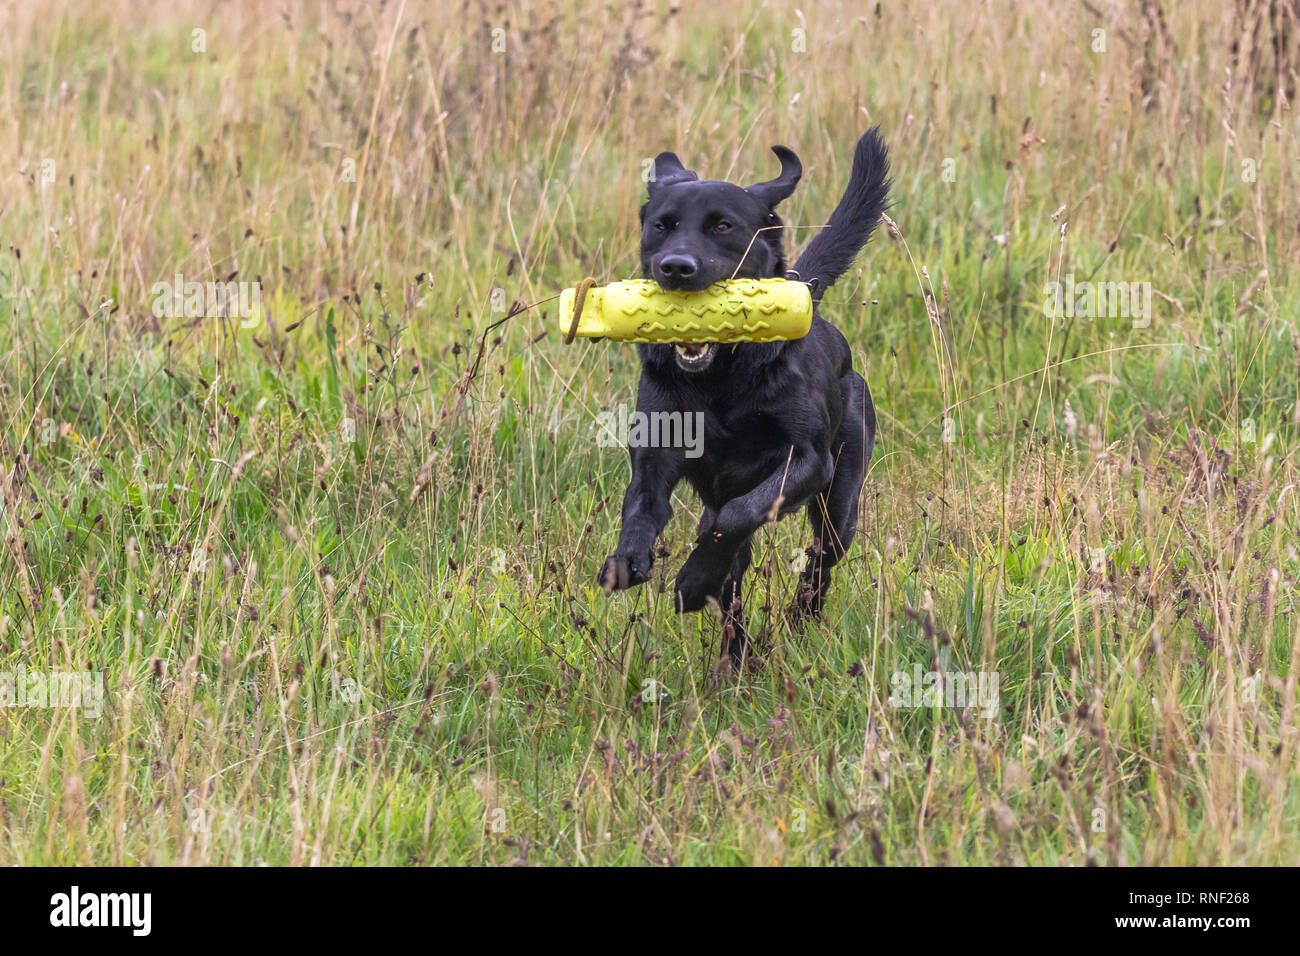 Ein schwarzer Labrador Retriever läuft durch Gras mit einer Pistole Hund dummy in seinem Mund. Stockfoto